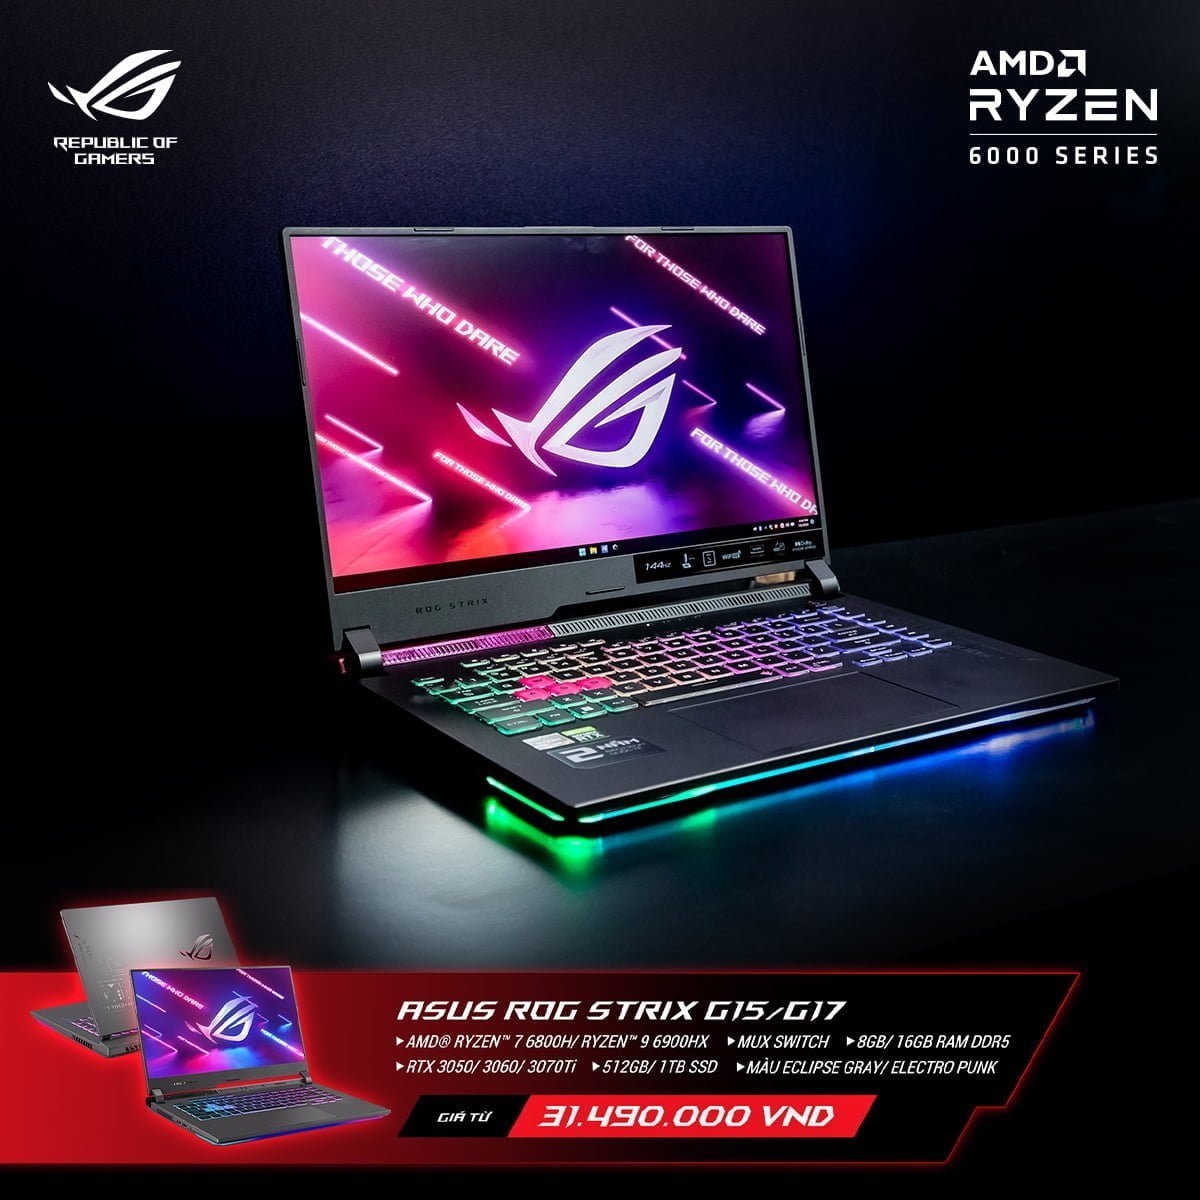 [PR] ASUS ROG công bố loạt sản phẩm laptop mới nền tảng AMD Ryzen 6000 Series tại thị trường Việt Nam - Image 16